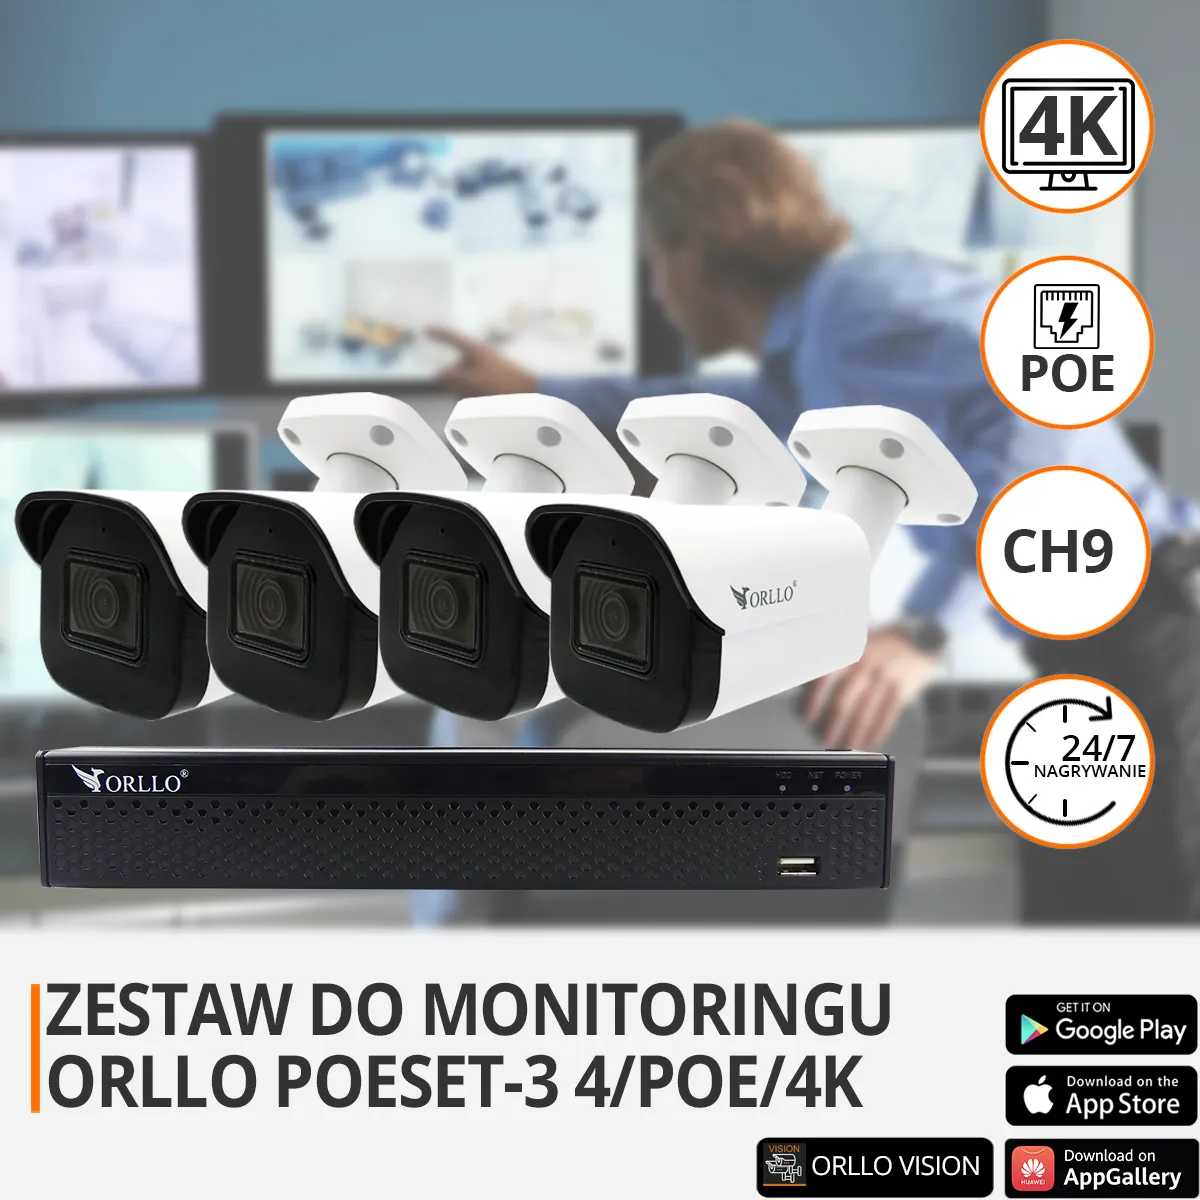 zestaw do monitoringu poe funkcje orllo.pl